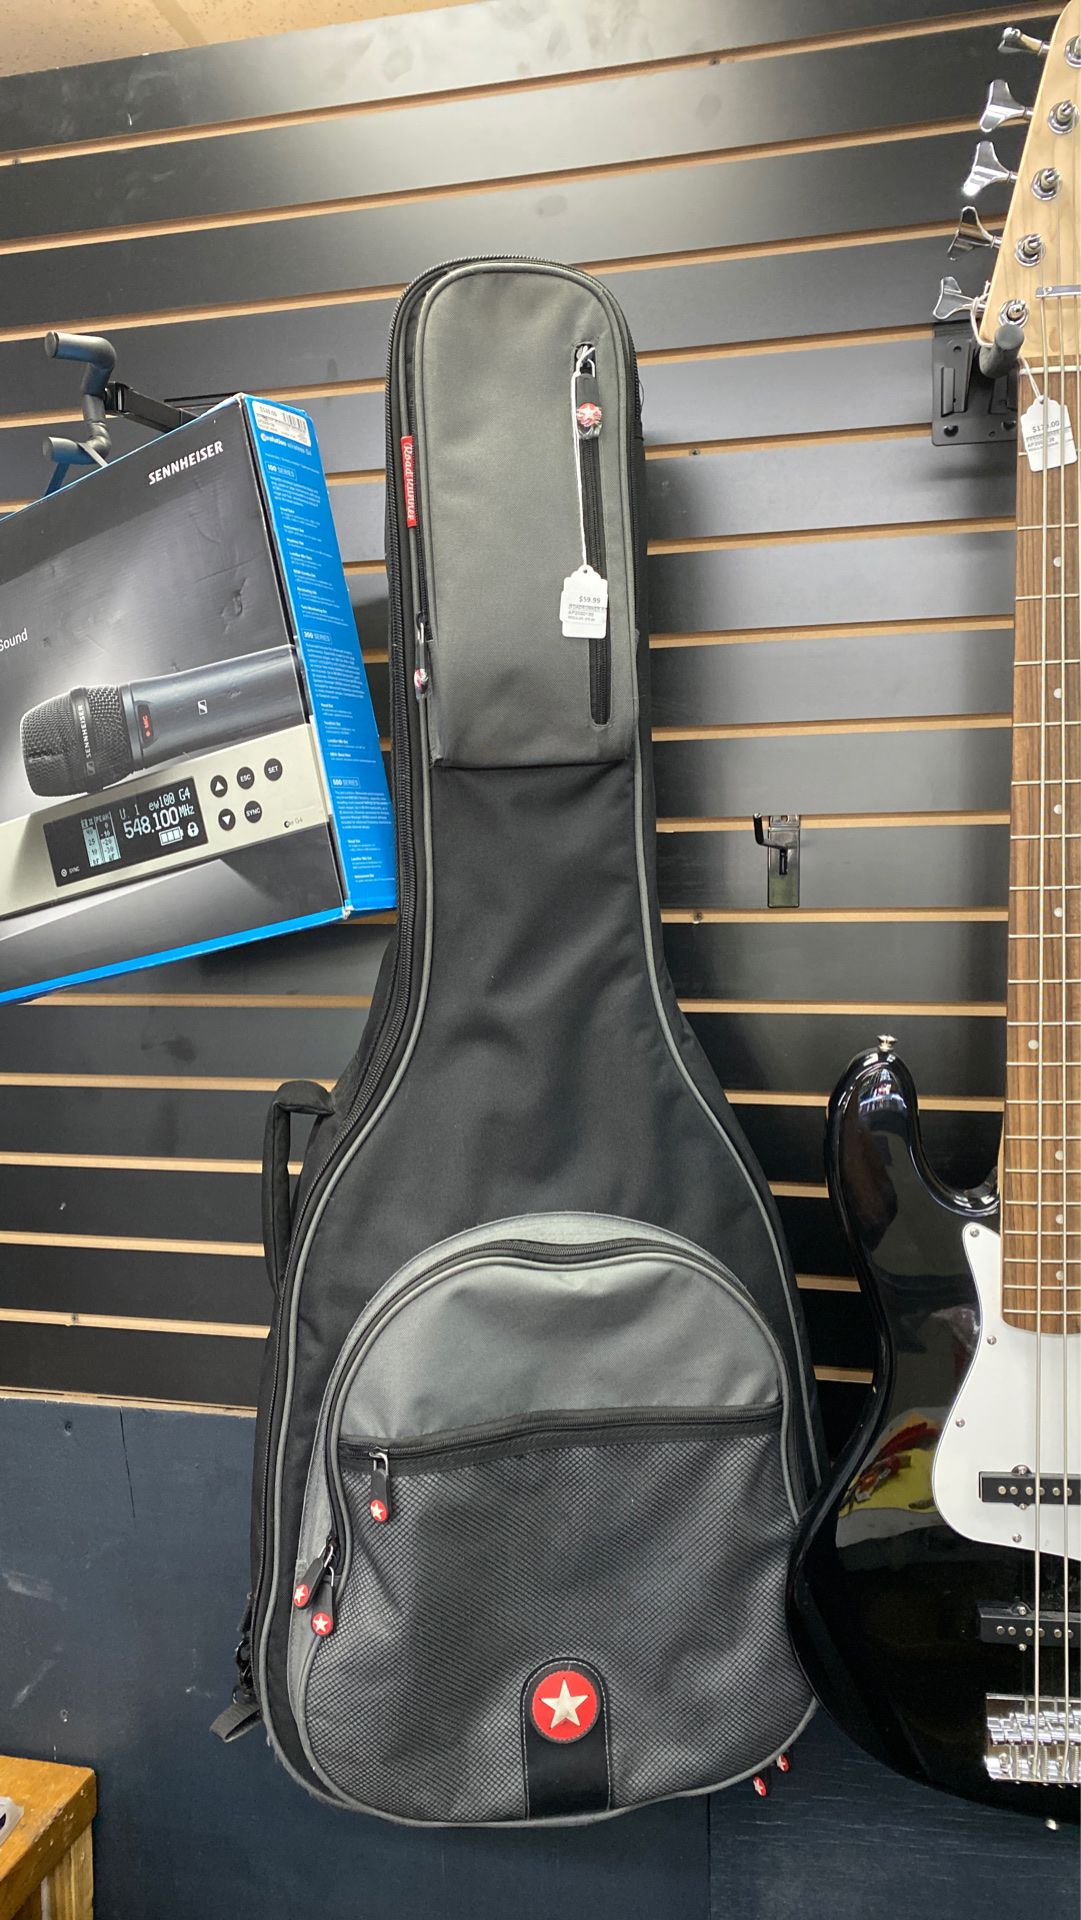 New Roadrunner Acoustic guitar bag